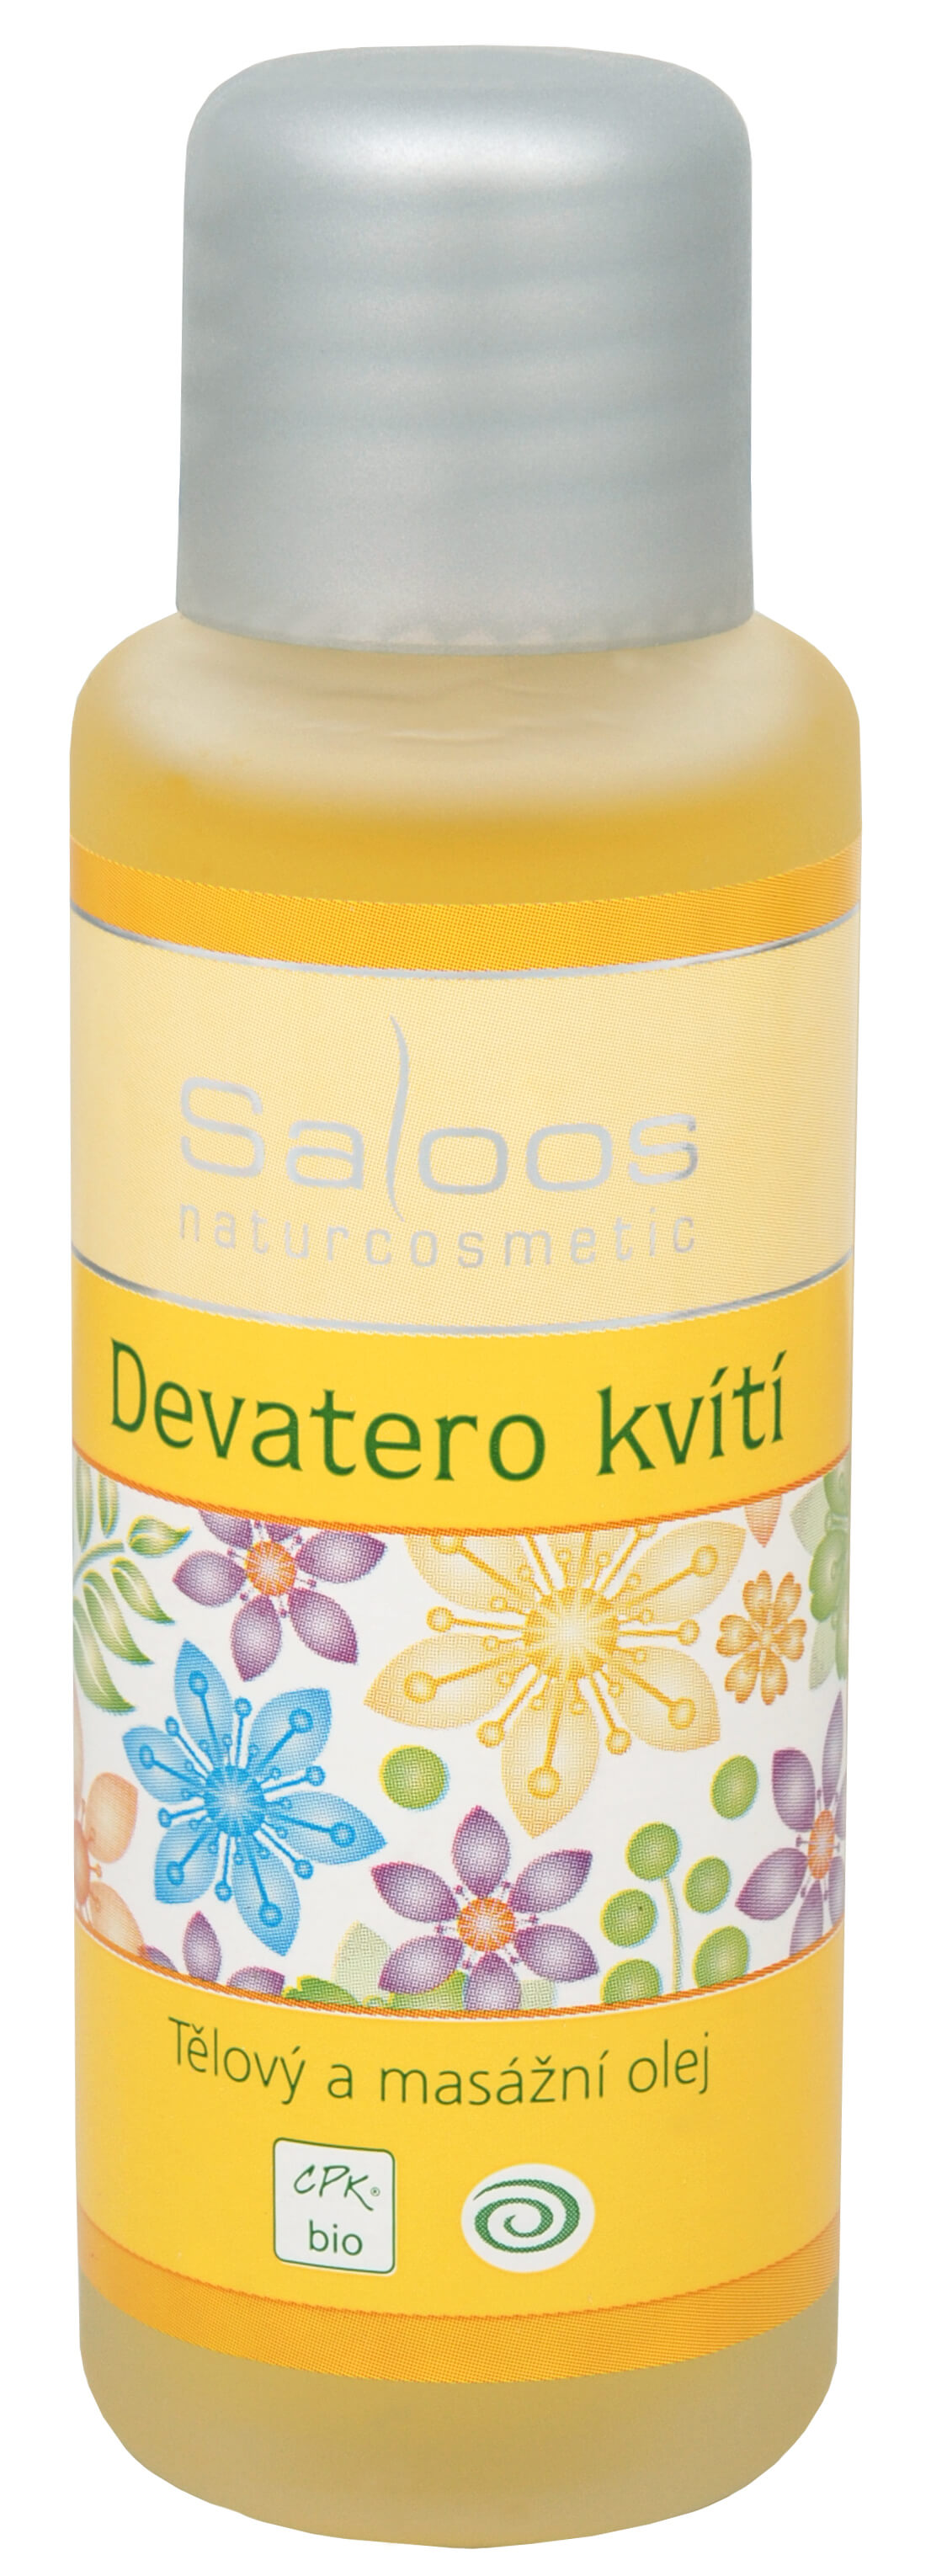 Zobrazit detail výrobku Saloos Bio tělový a masážní olej - Devatero kvítí 250 ml + 2 měsíce na vrácení zboží